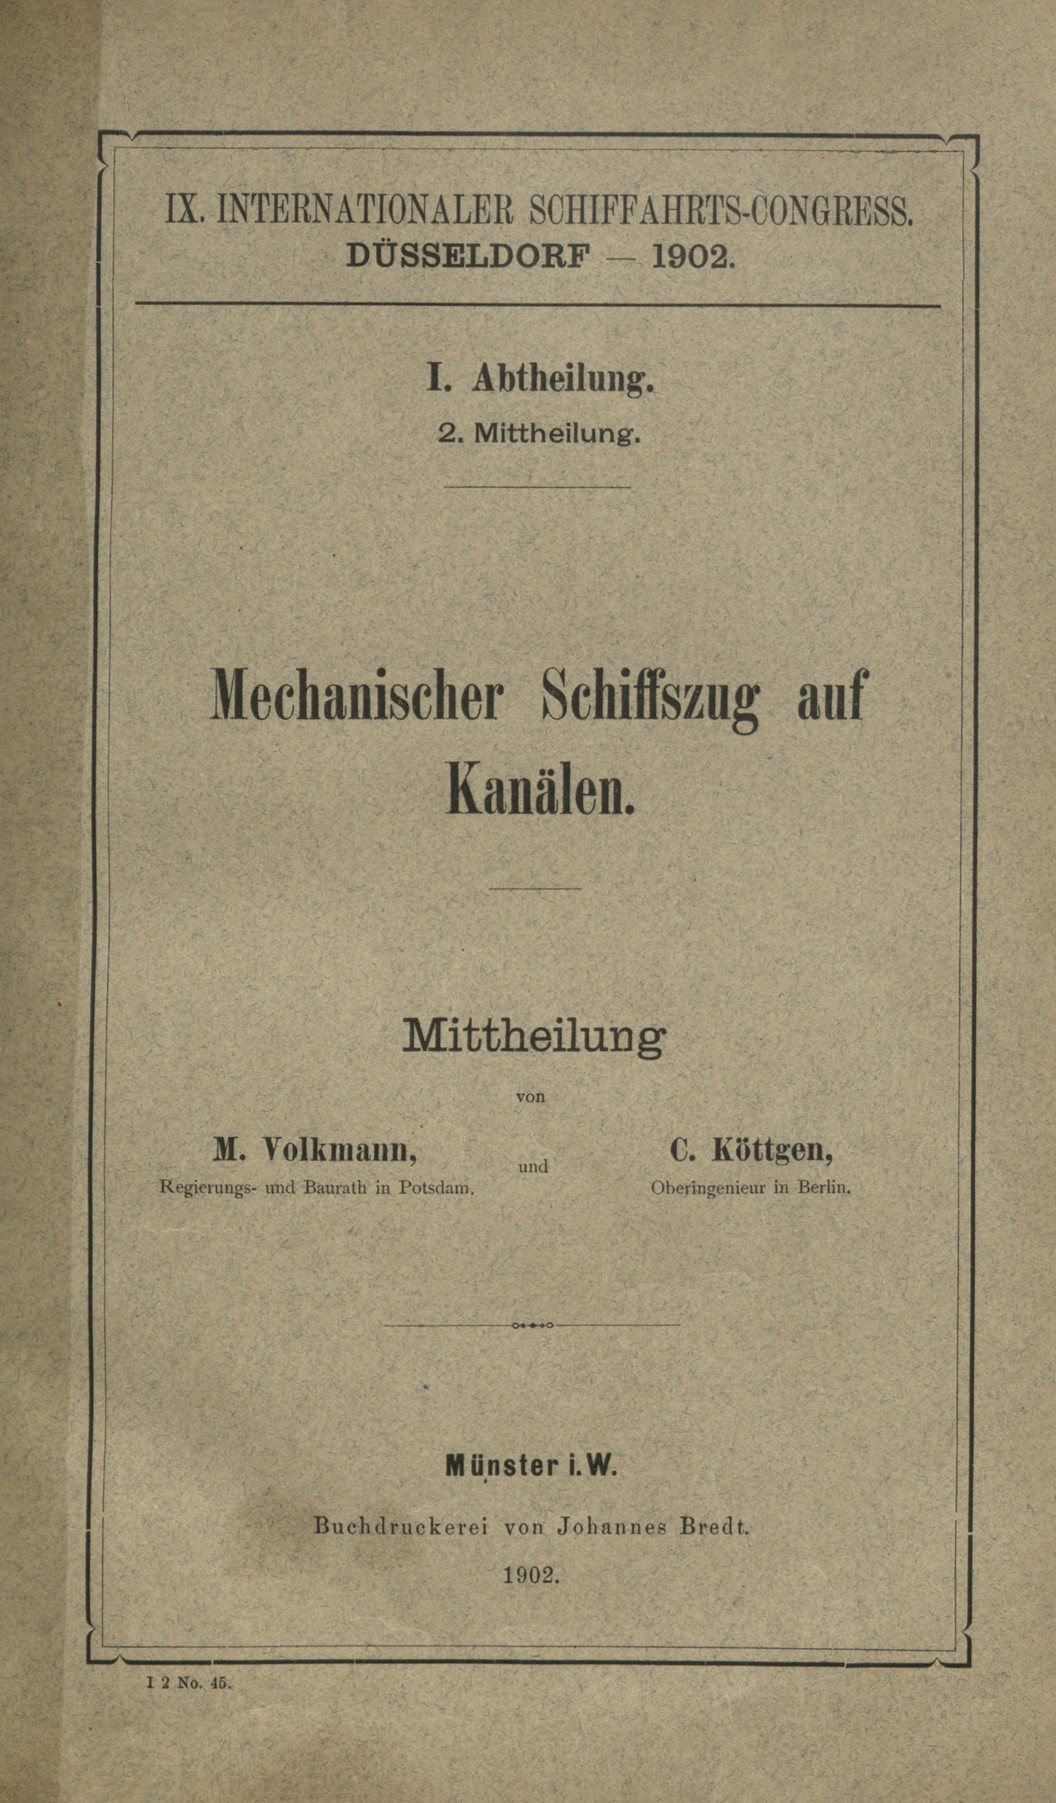 IX. Internationaler Schiffahrts-Congress, Düsseldorf 1902. Abt. 1, Mitt. 2, Mechanischer Schiffszug auf Kanälen : Mittheilung